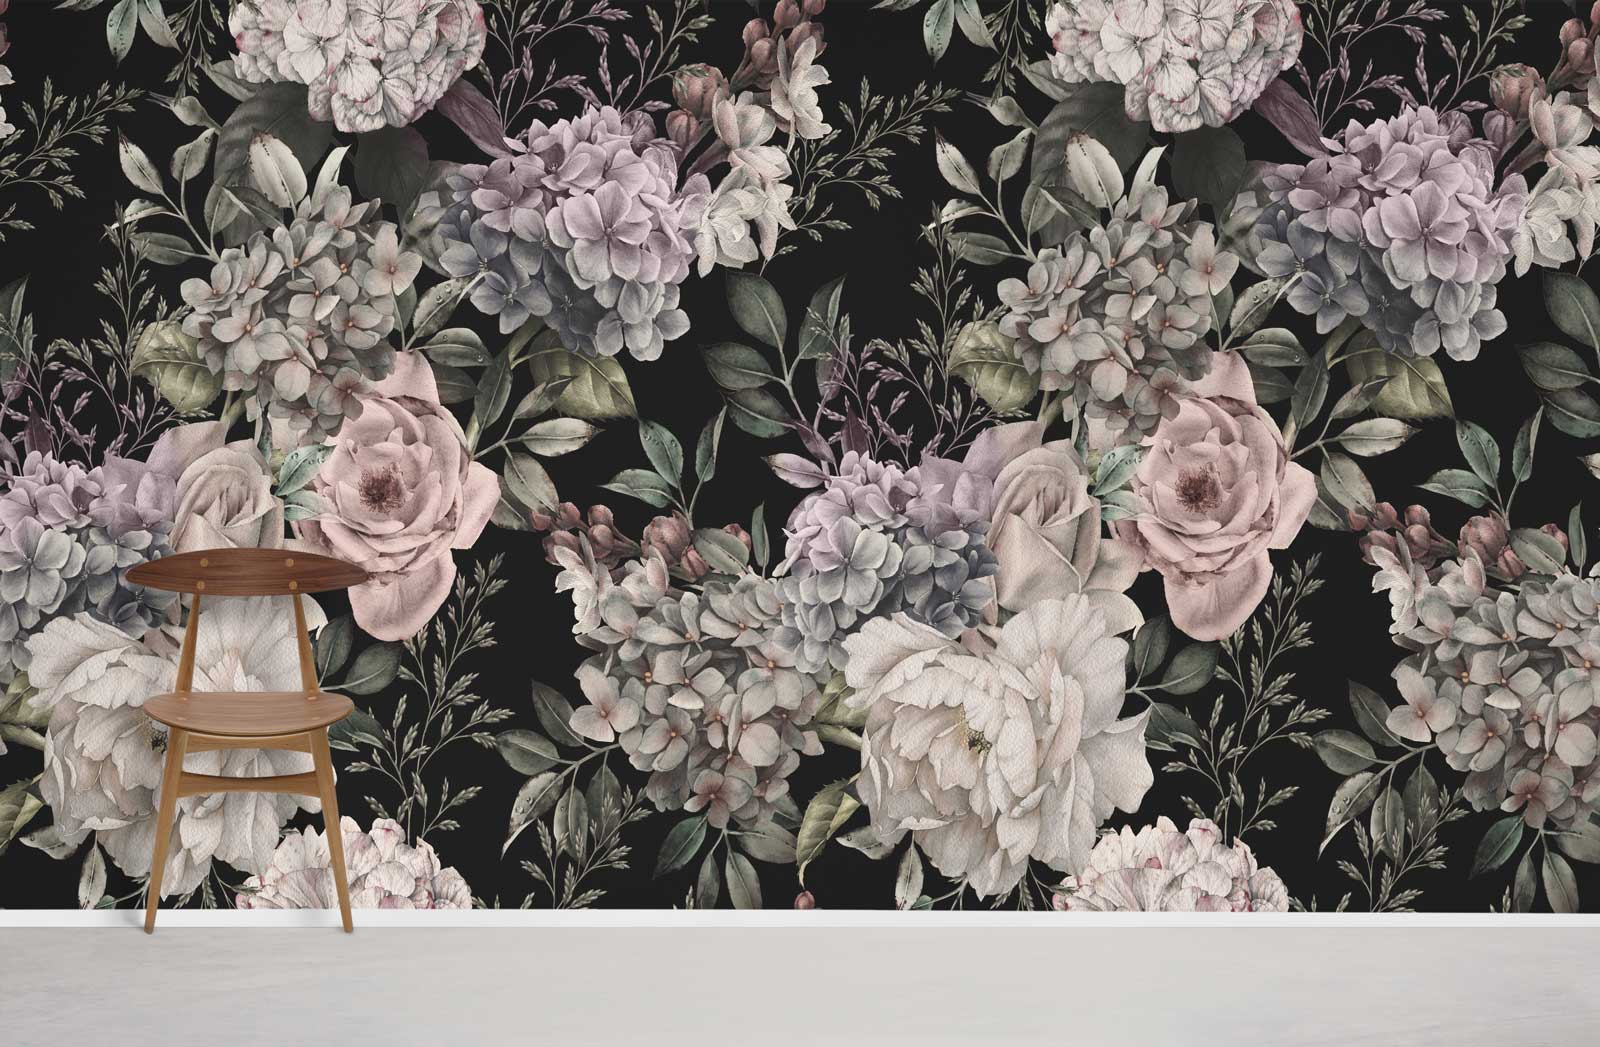 fond d'écran à thème floral mural